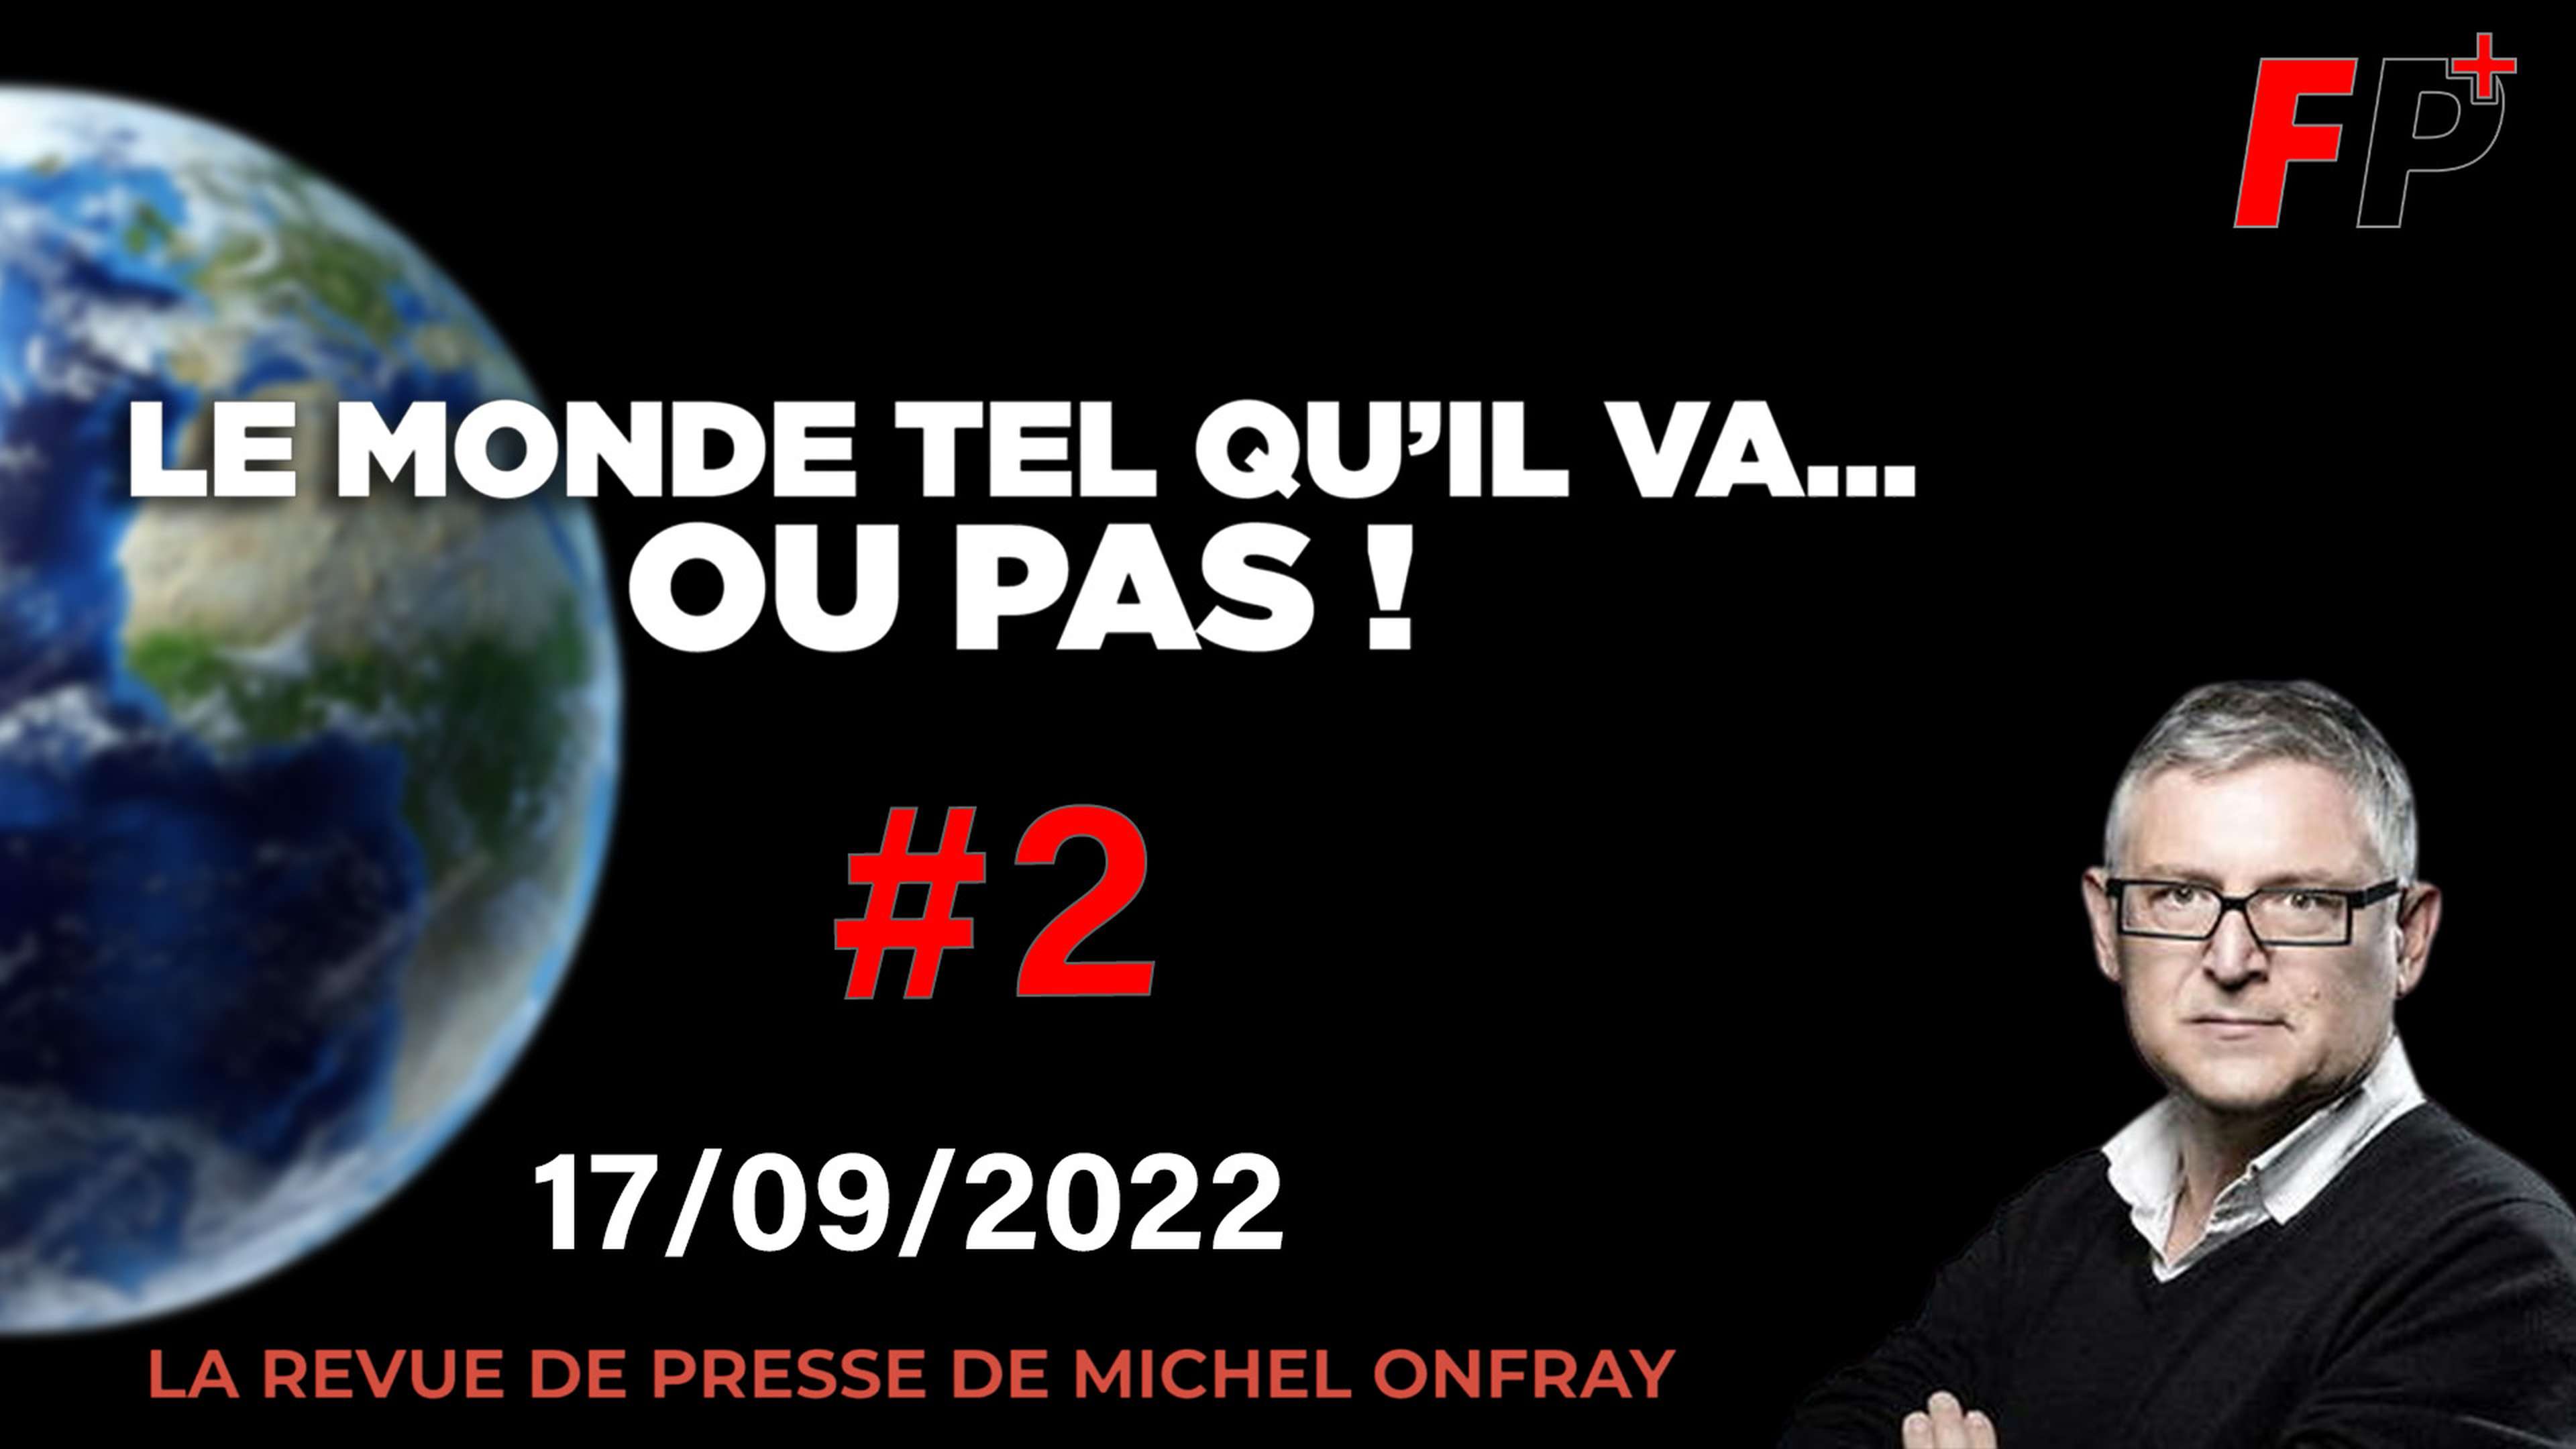 Le monde tel qu'il va… ou pas ! – la revue de presse de Michel Onfray (#2)